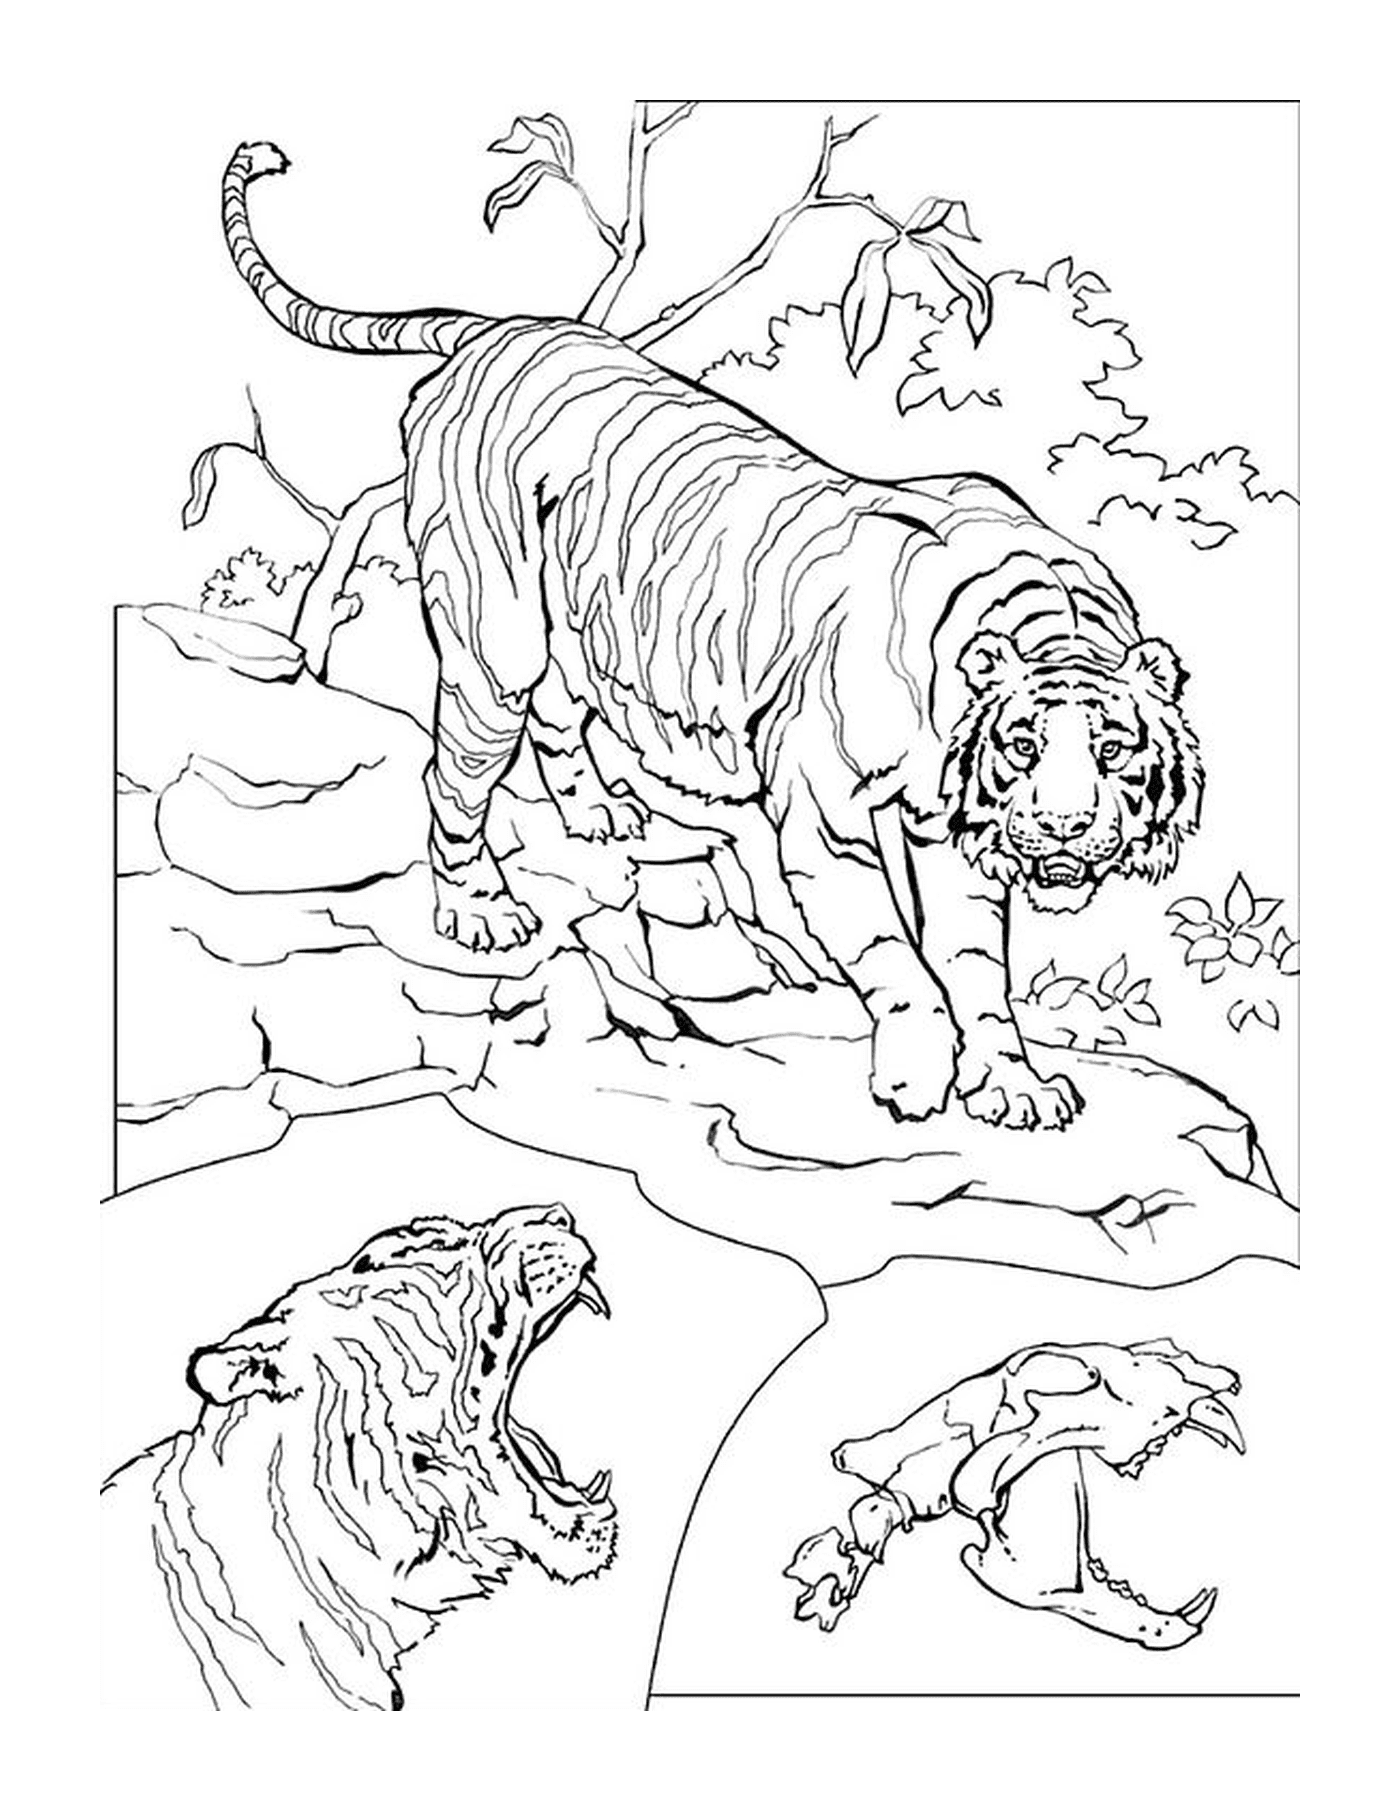  एक विशाल बाघ 